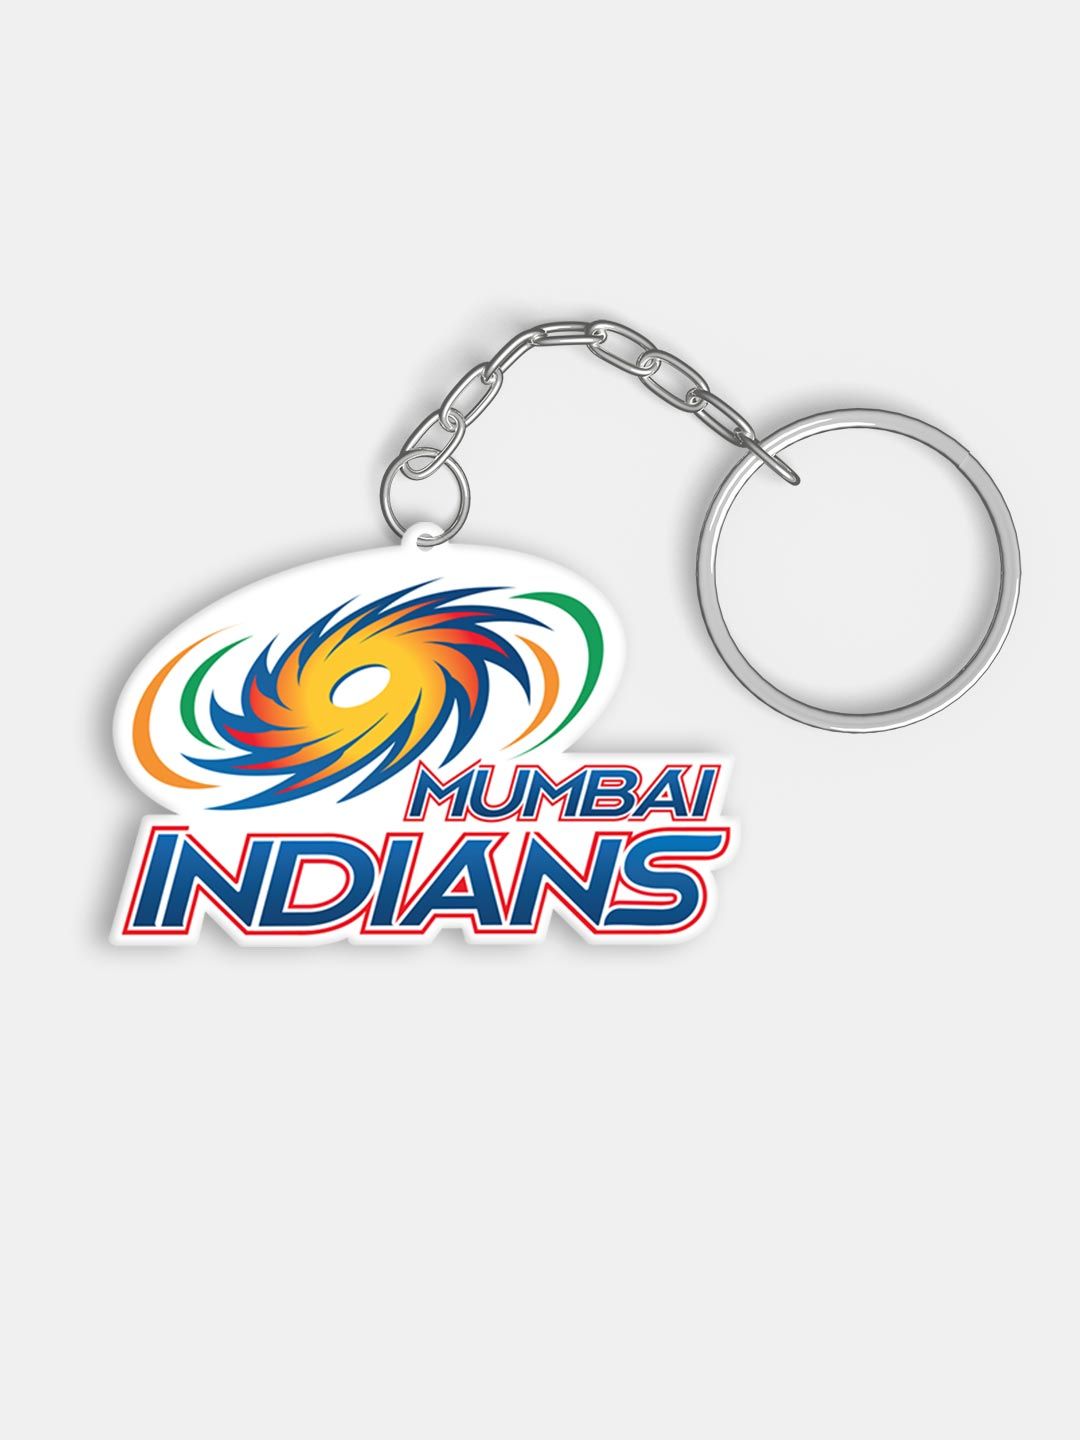 Buy Mumbai Indians - Acrylic Keychains Keychains Online